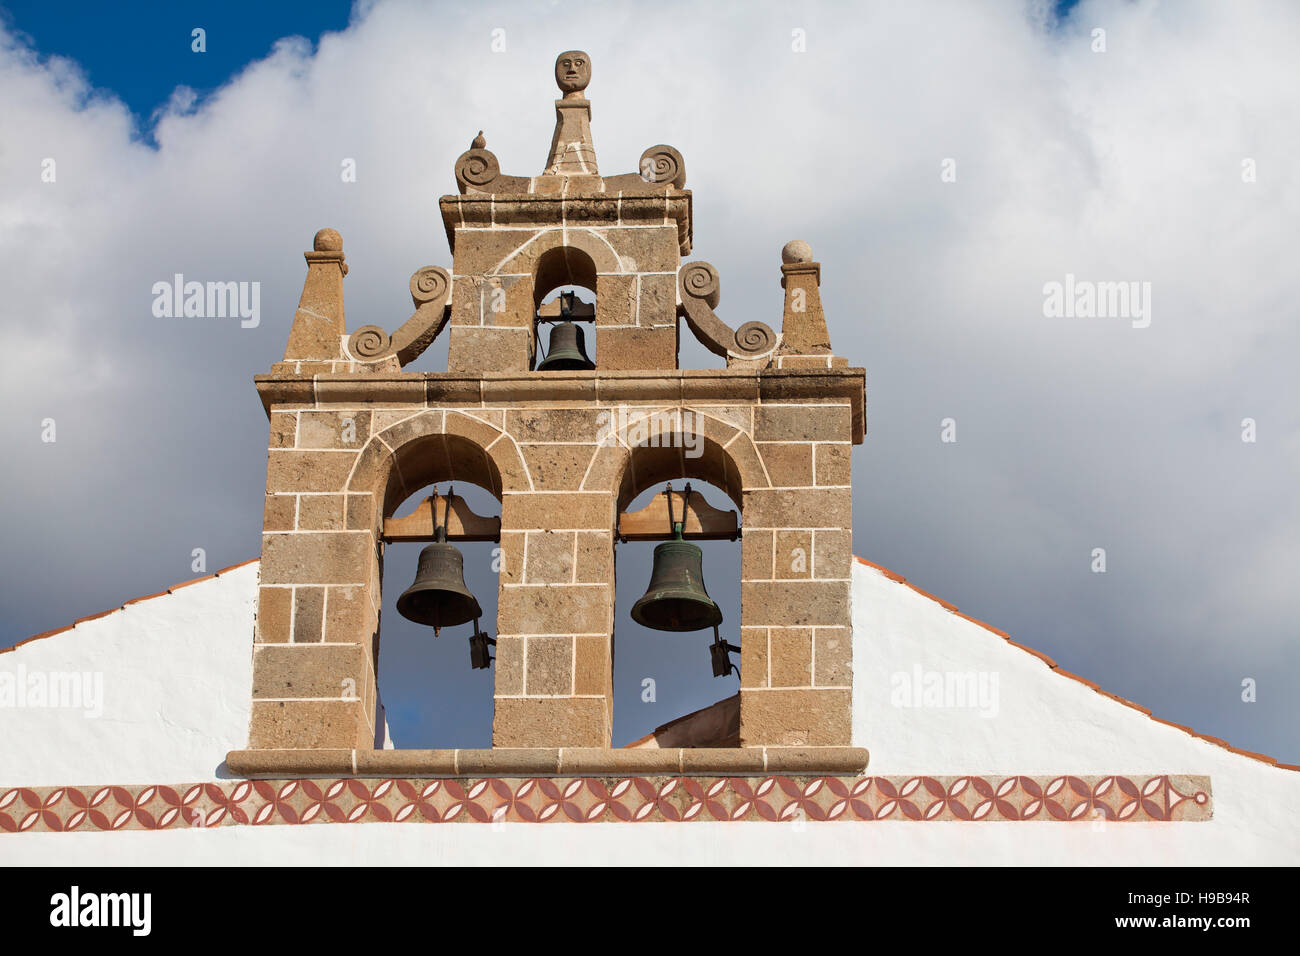 Clocher de l'église, la Plaza de Espana, Adeje, Tenerife, Espagne Banque D'Images